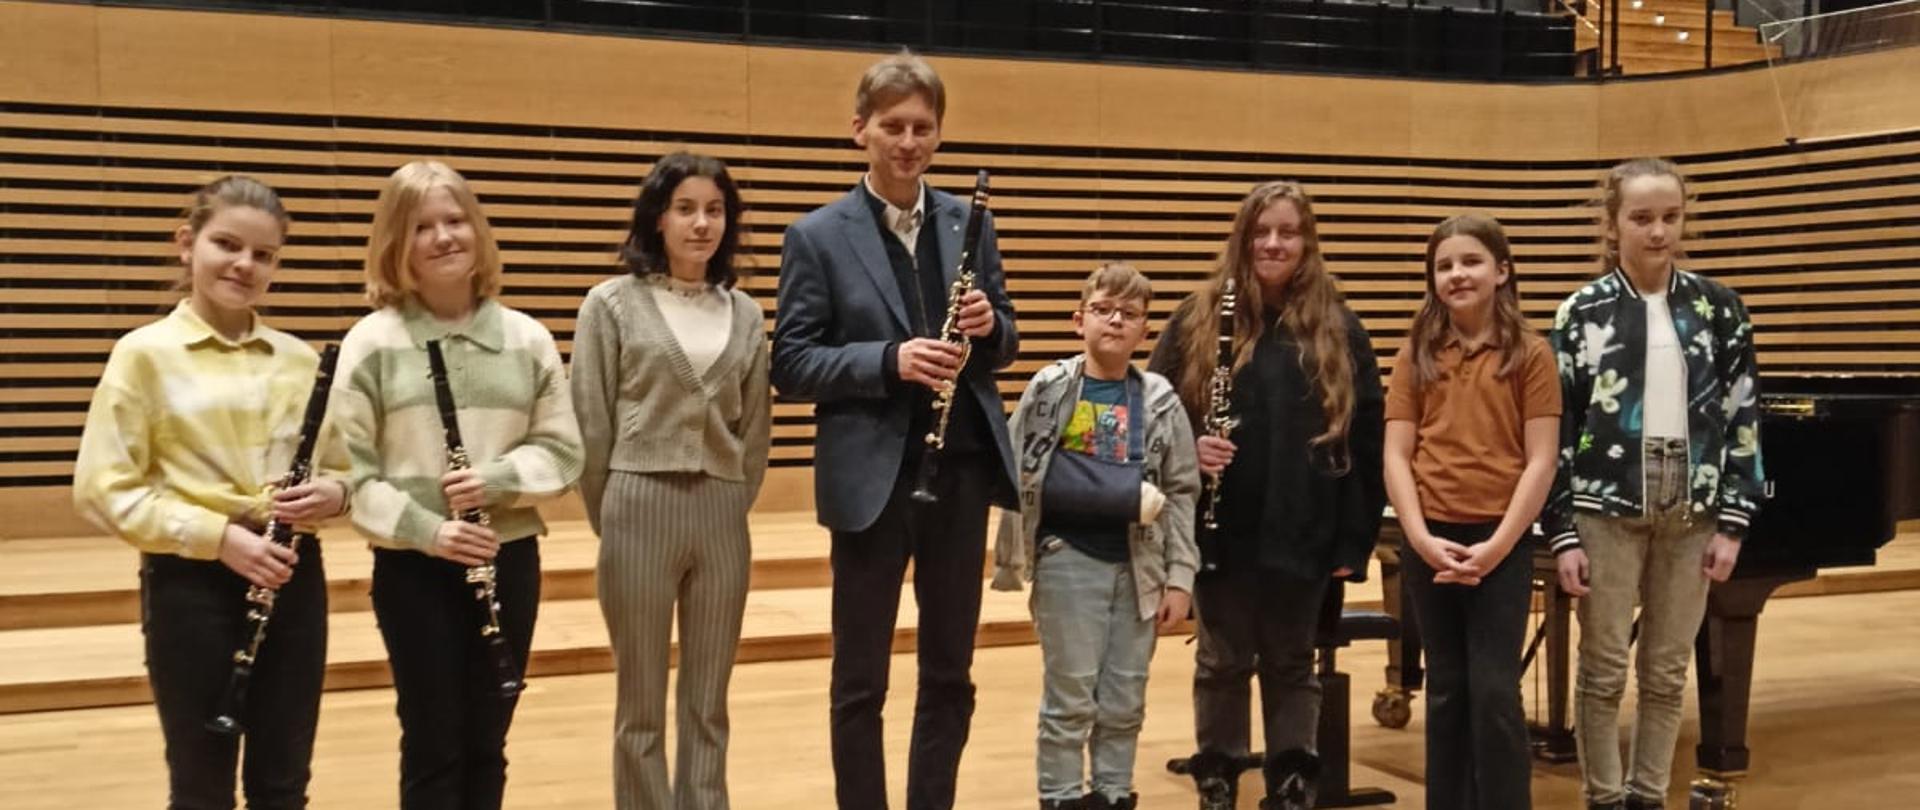 Ośmiu uczestników warsztatów i prowadzący stoją na scenie sali koncertowej PSM, trzy uczennice i prowadzący trzymają klarnety.